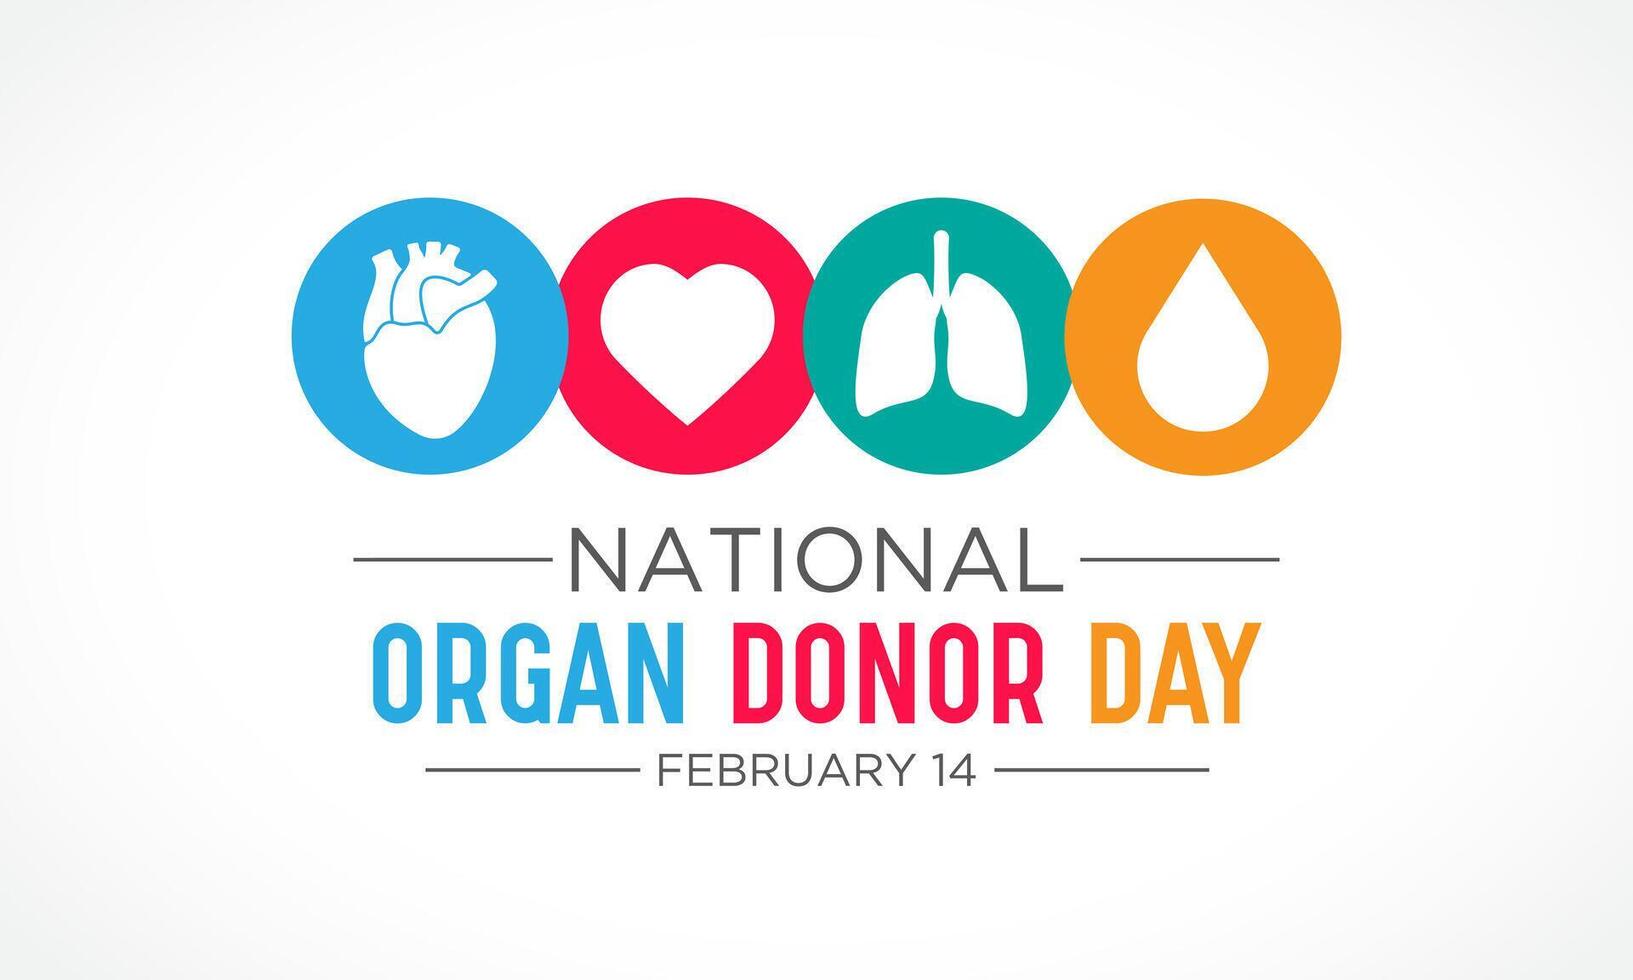 nationell organ givare dag är observerats varje år i februari 14. nationell givare dag. hälsa och medicinsk medvetenhet vektor mall för baner, kort, affisch och bakgrund design. vektor illustration.